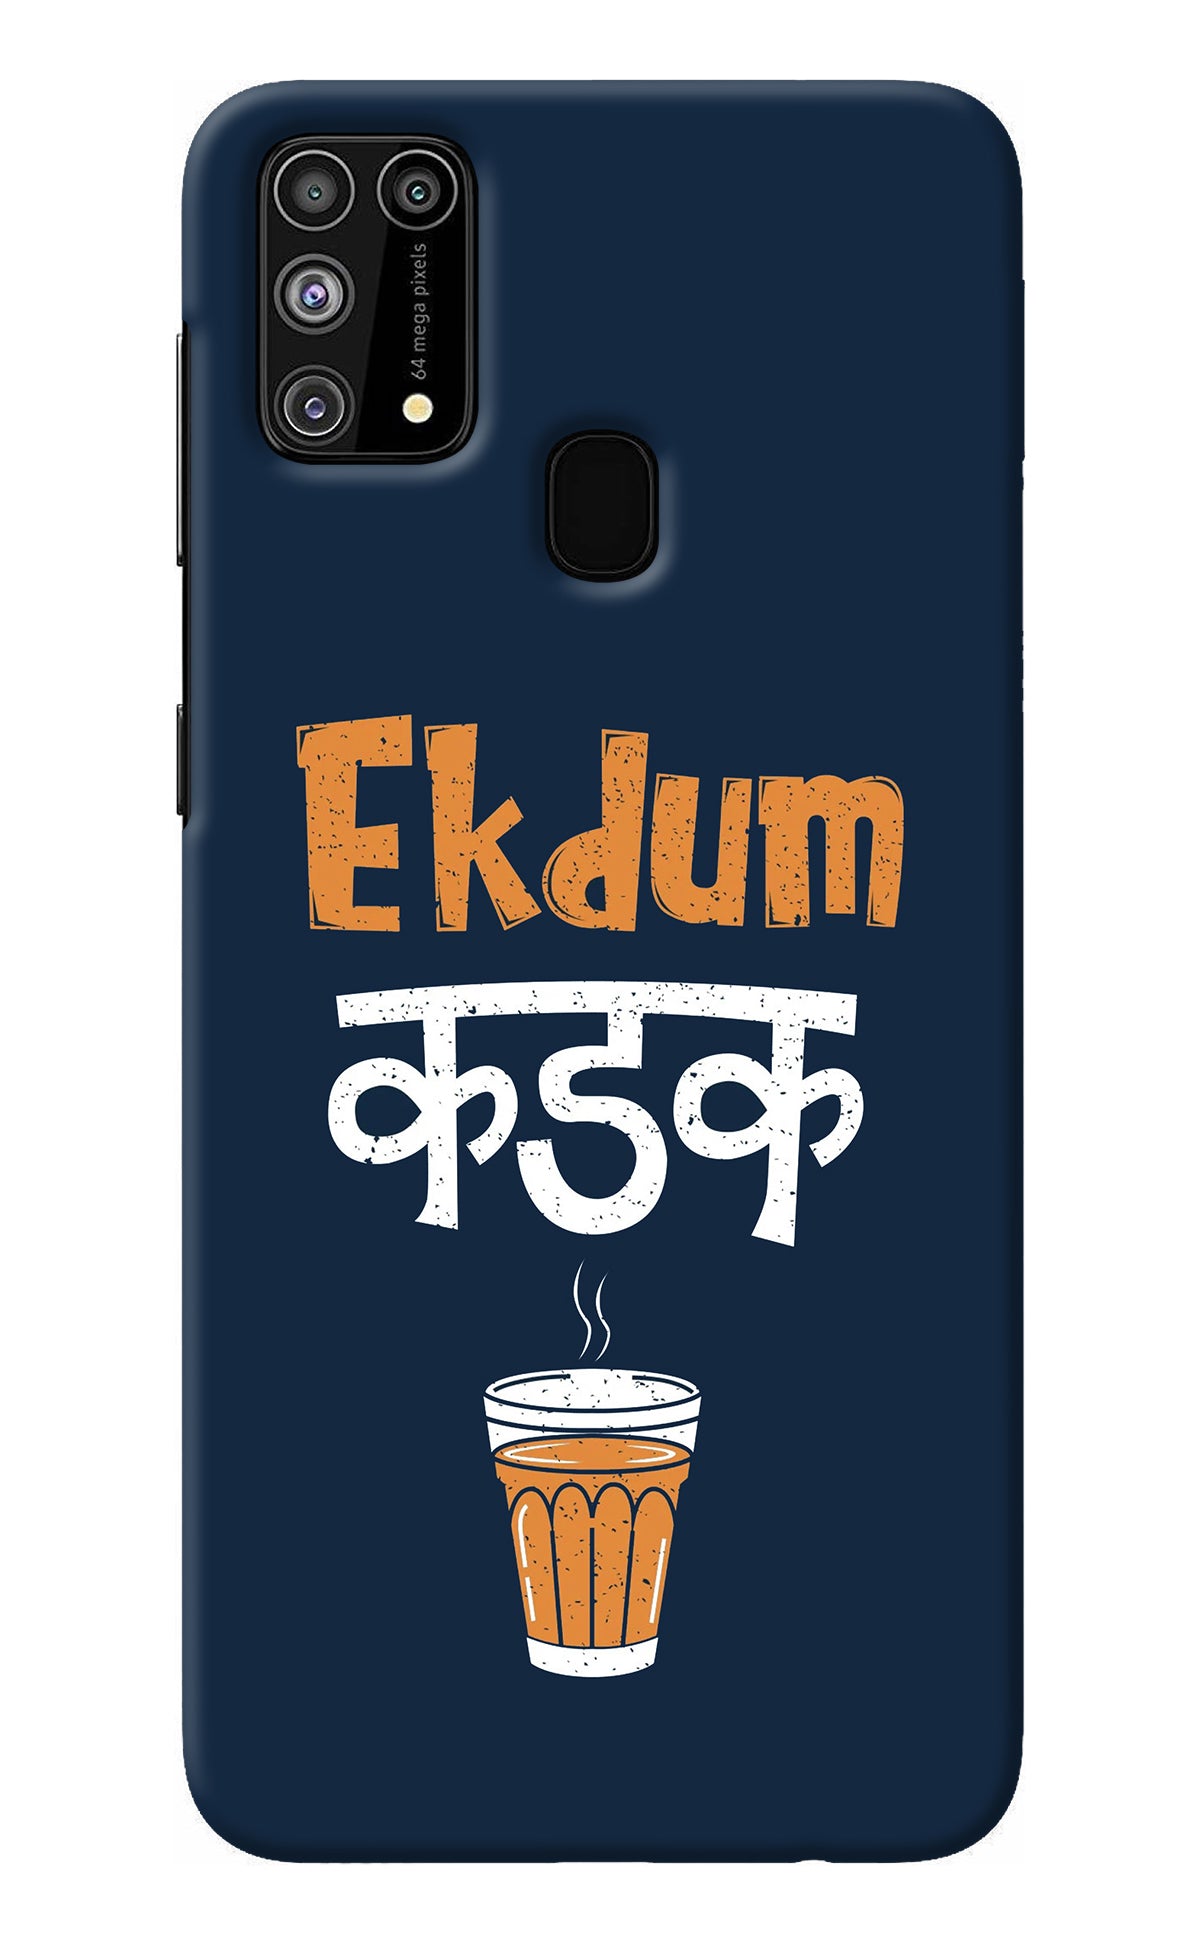 Ekdum Kadak Chai Samsung M31/F41 Back Cover